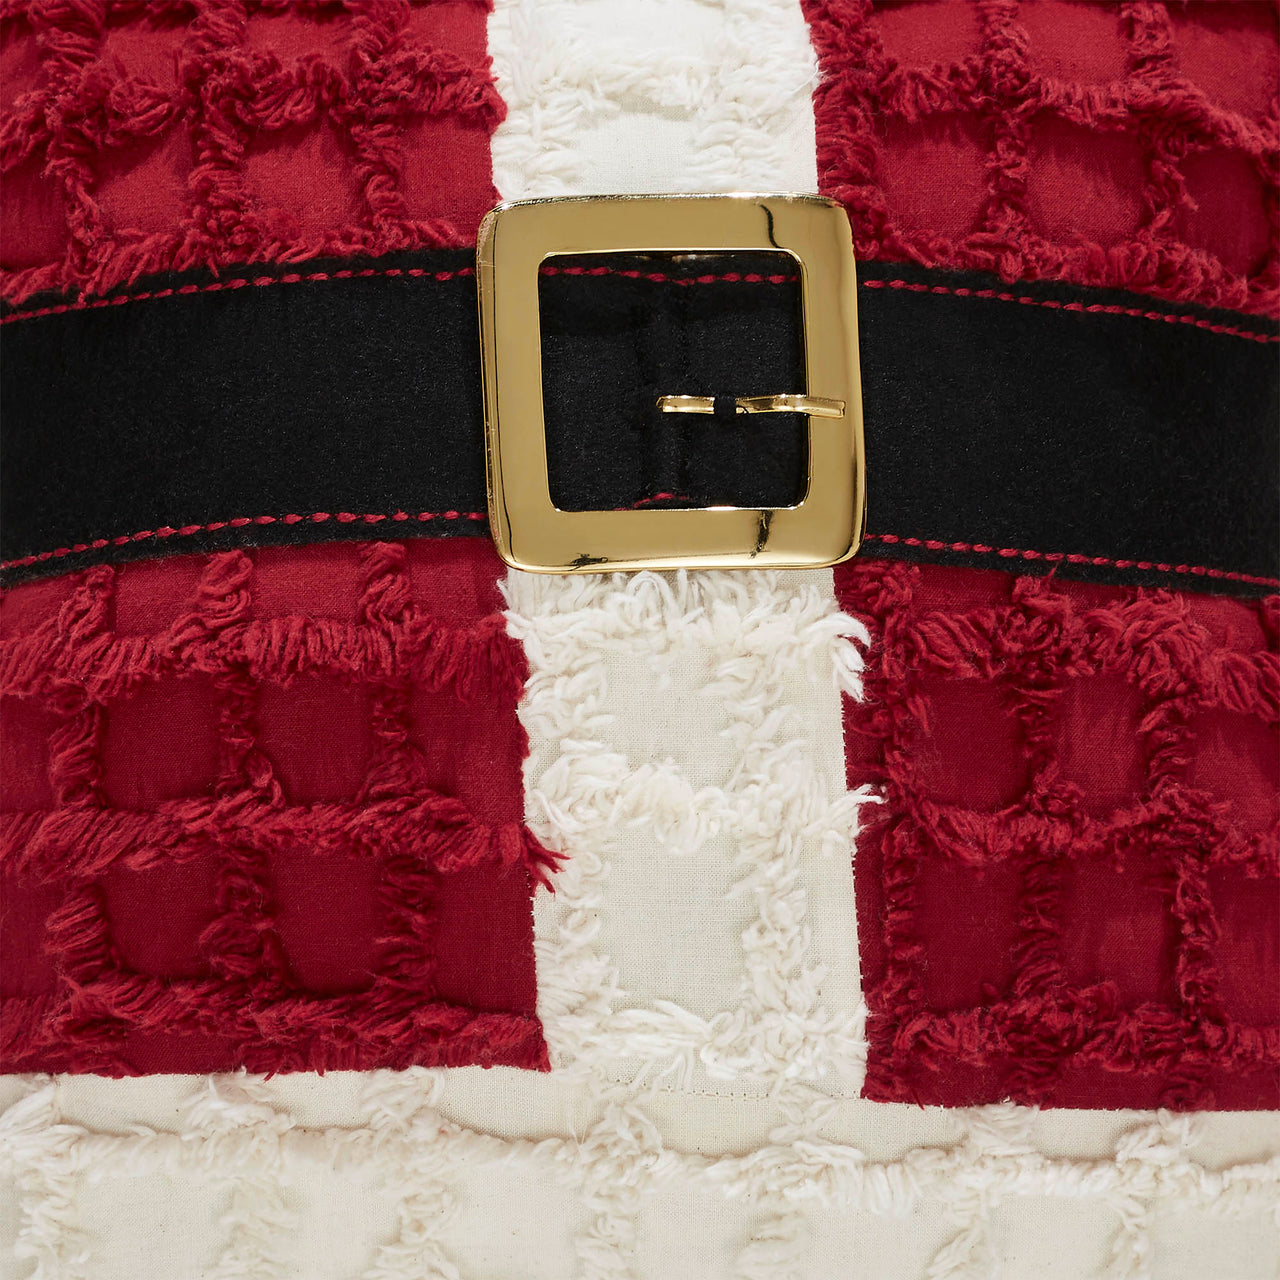 Chenille Christmas Santa Suit Pillow 12"x12"